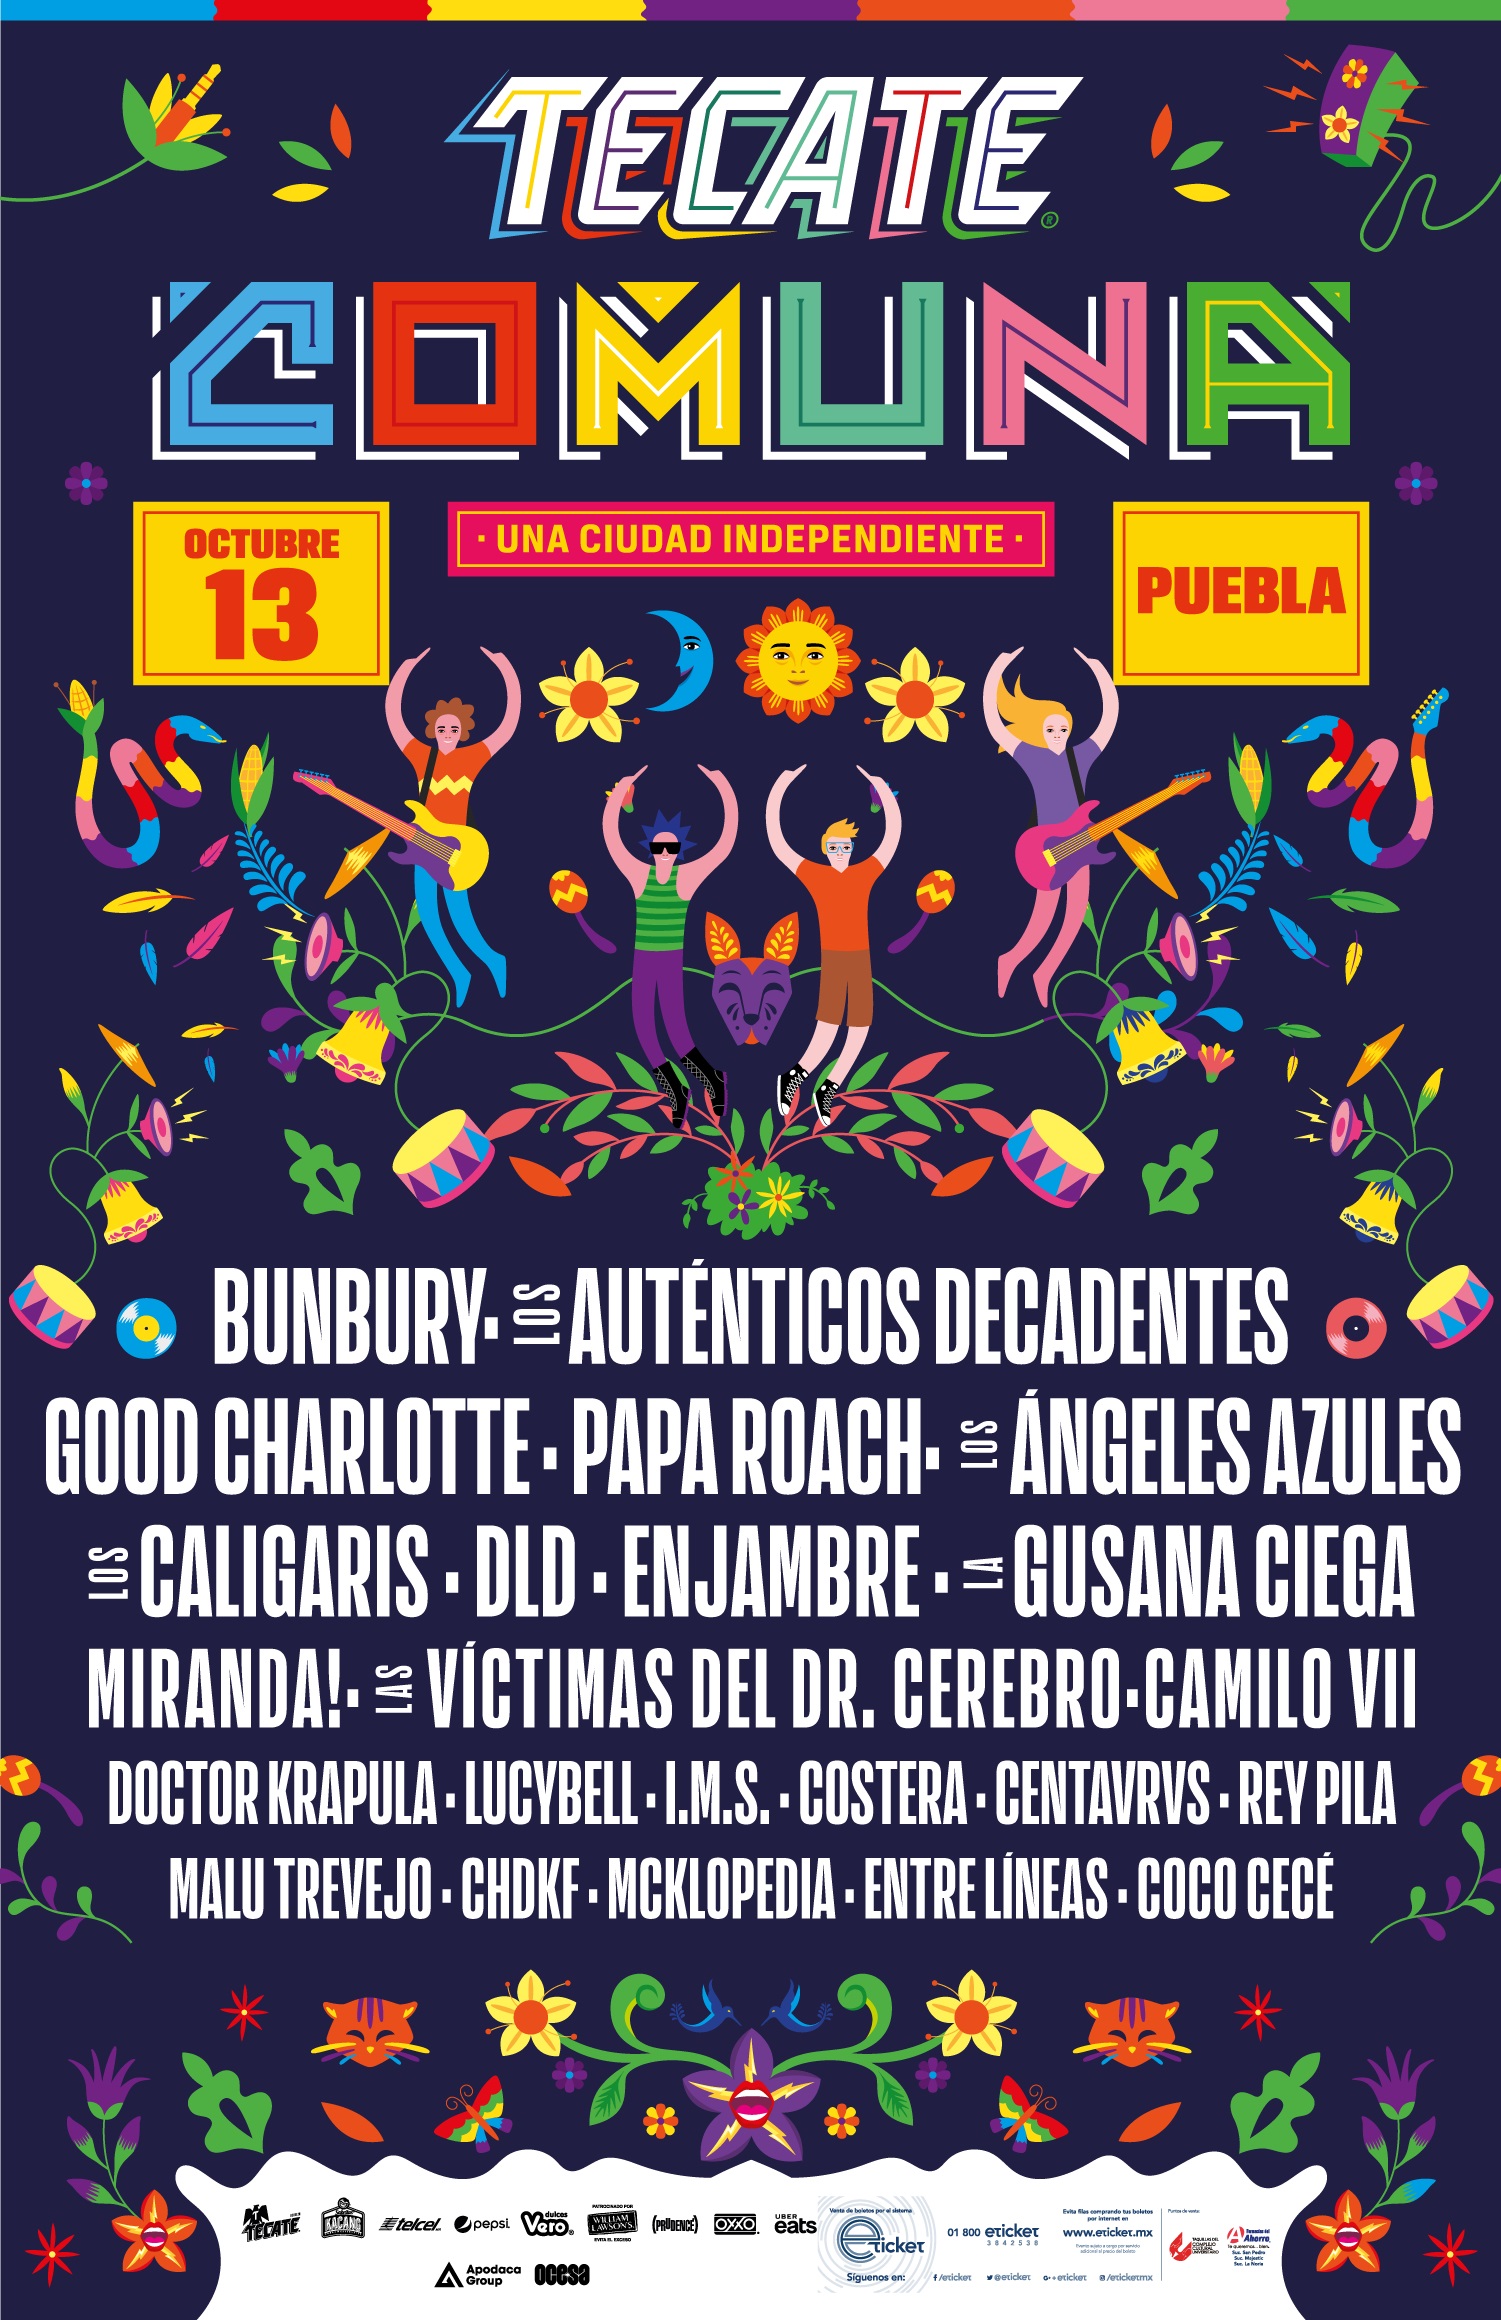 Regresa a Puebla el festival más grande de la ciudad: Tecate Comuna una ciudad independiente